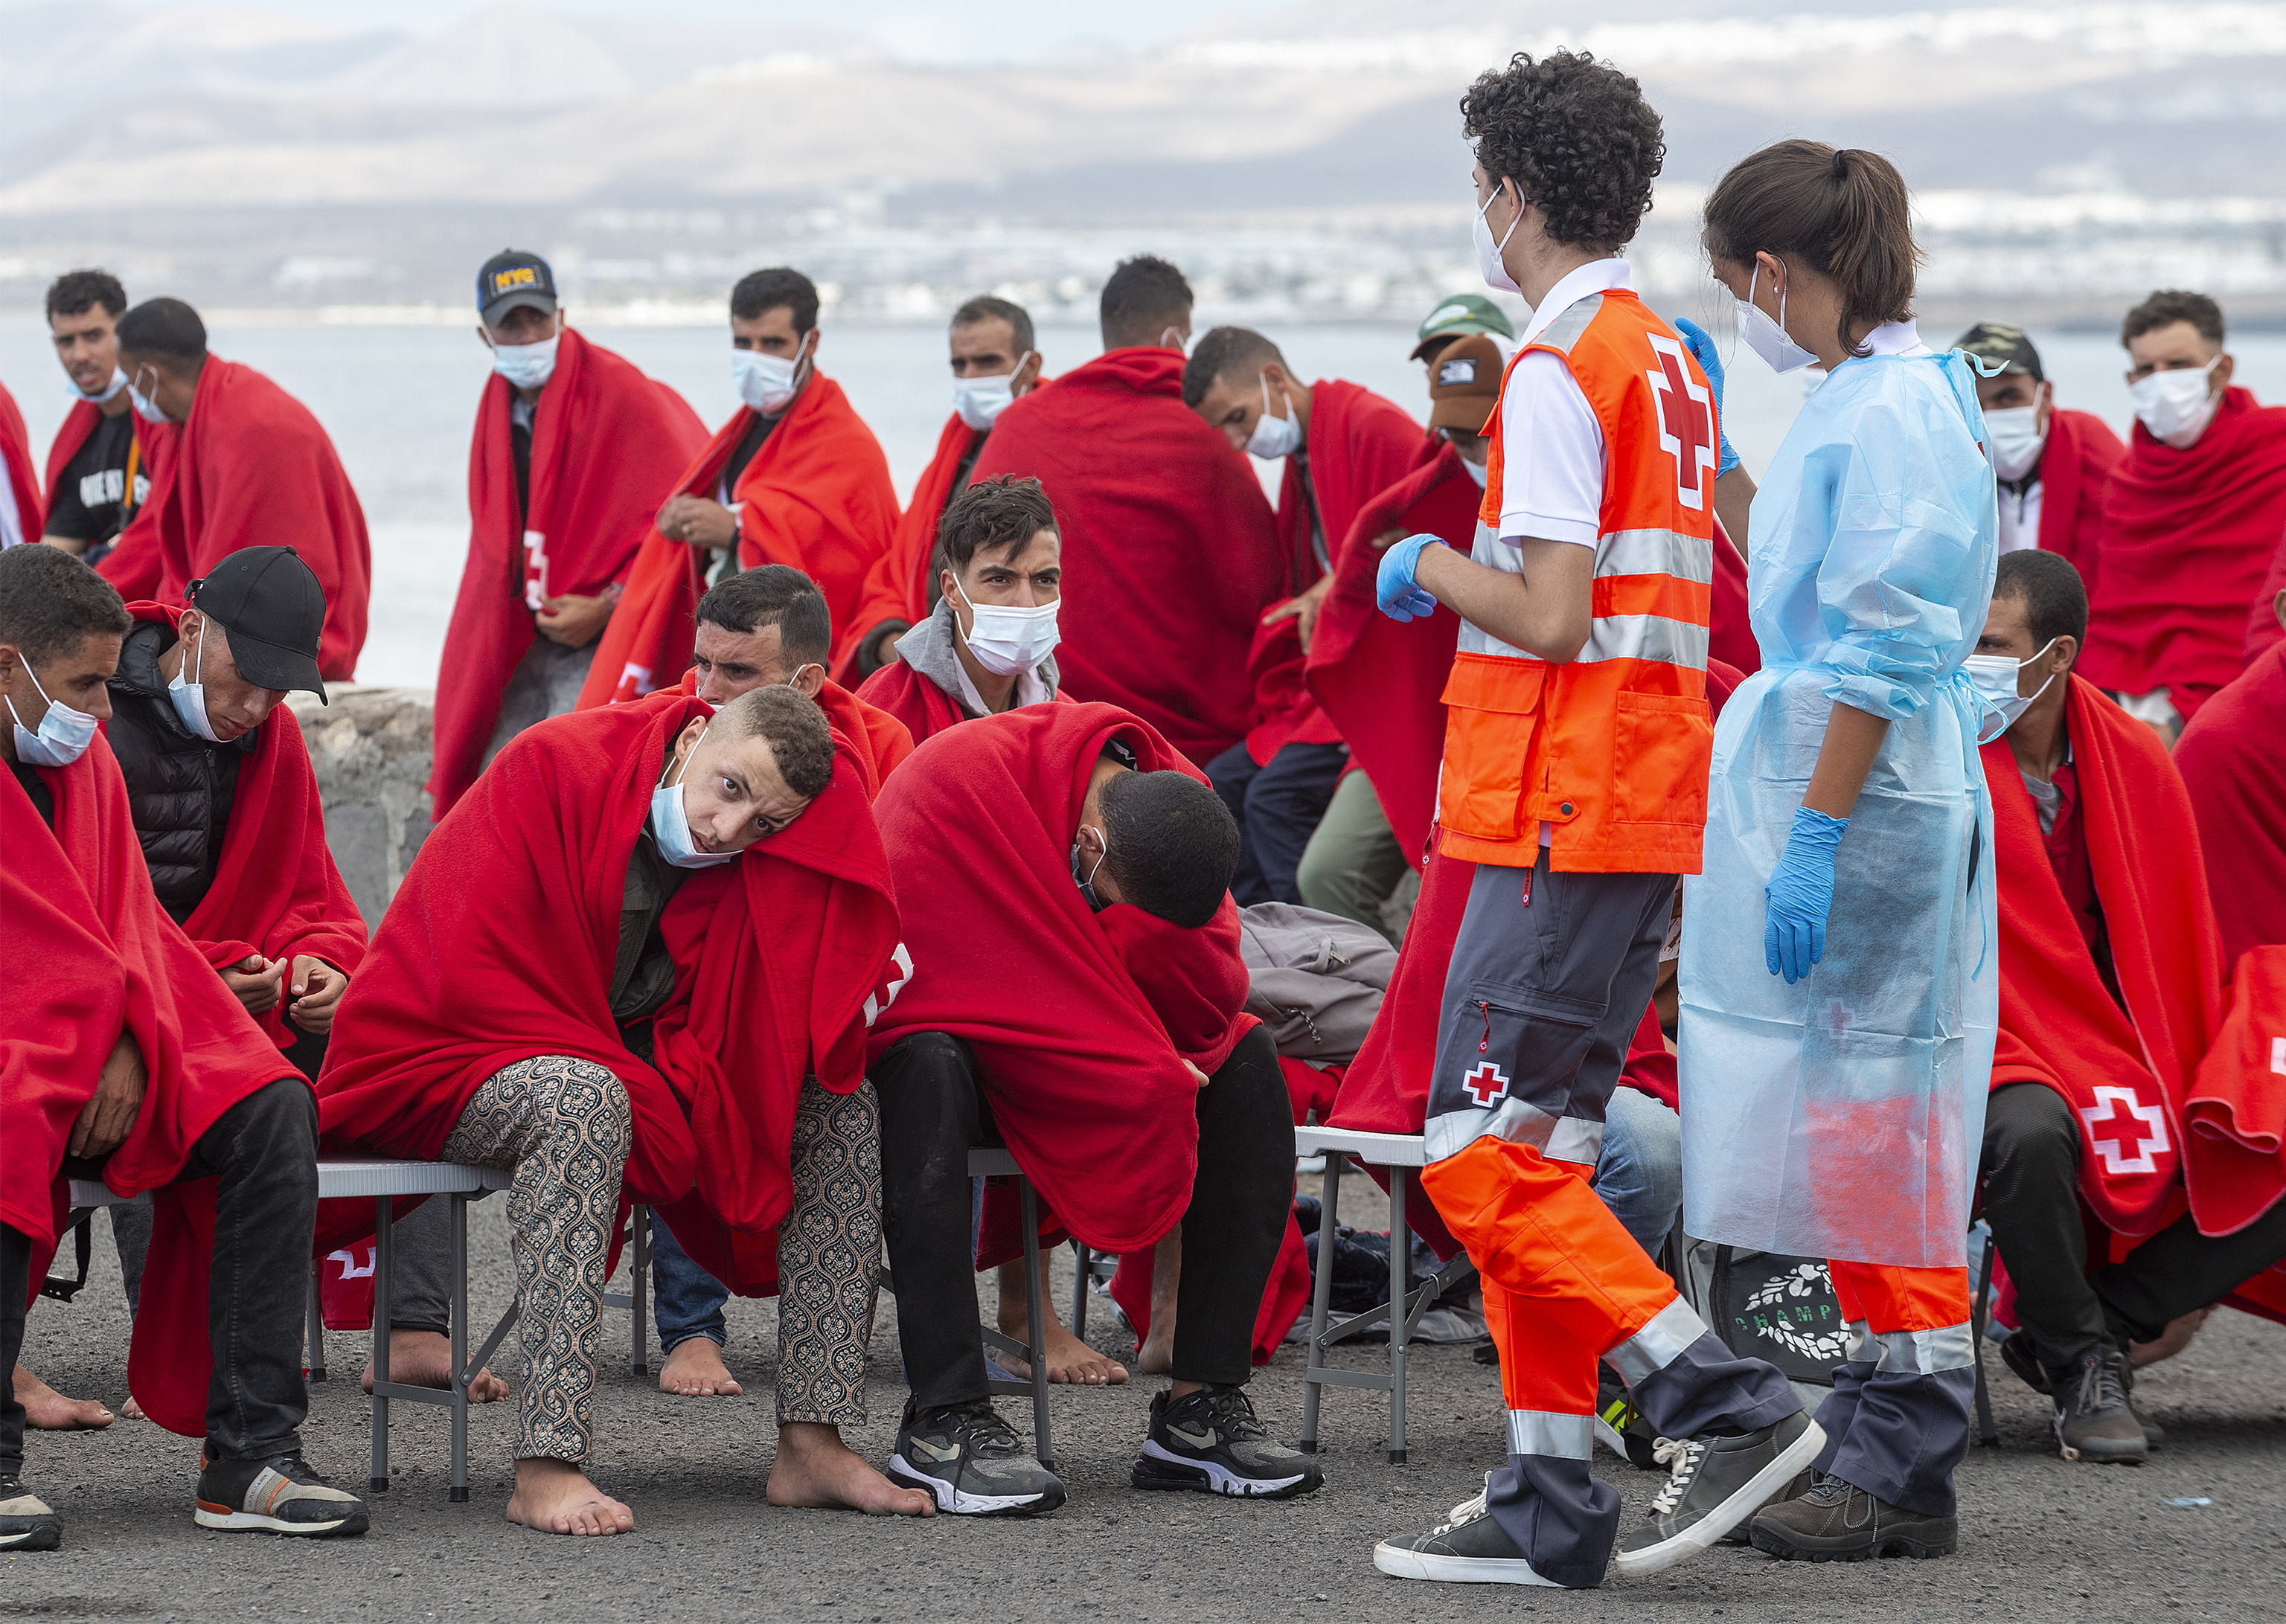 La Comisin Europea (CE) ha iniciado este jueves un procedimiento de infraccin contra Espaa, Blgica, Grecia y Portugal por las condiciones de recepcin de los solicitantes de asilo.

ilo.